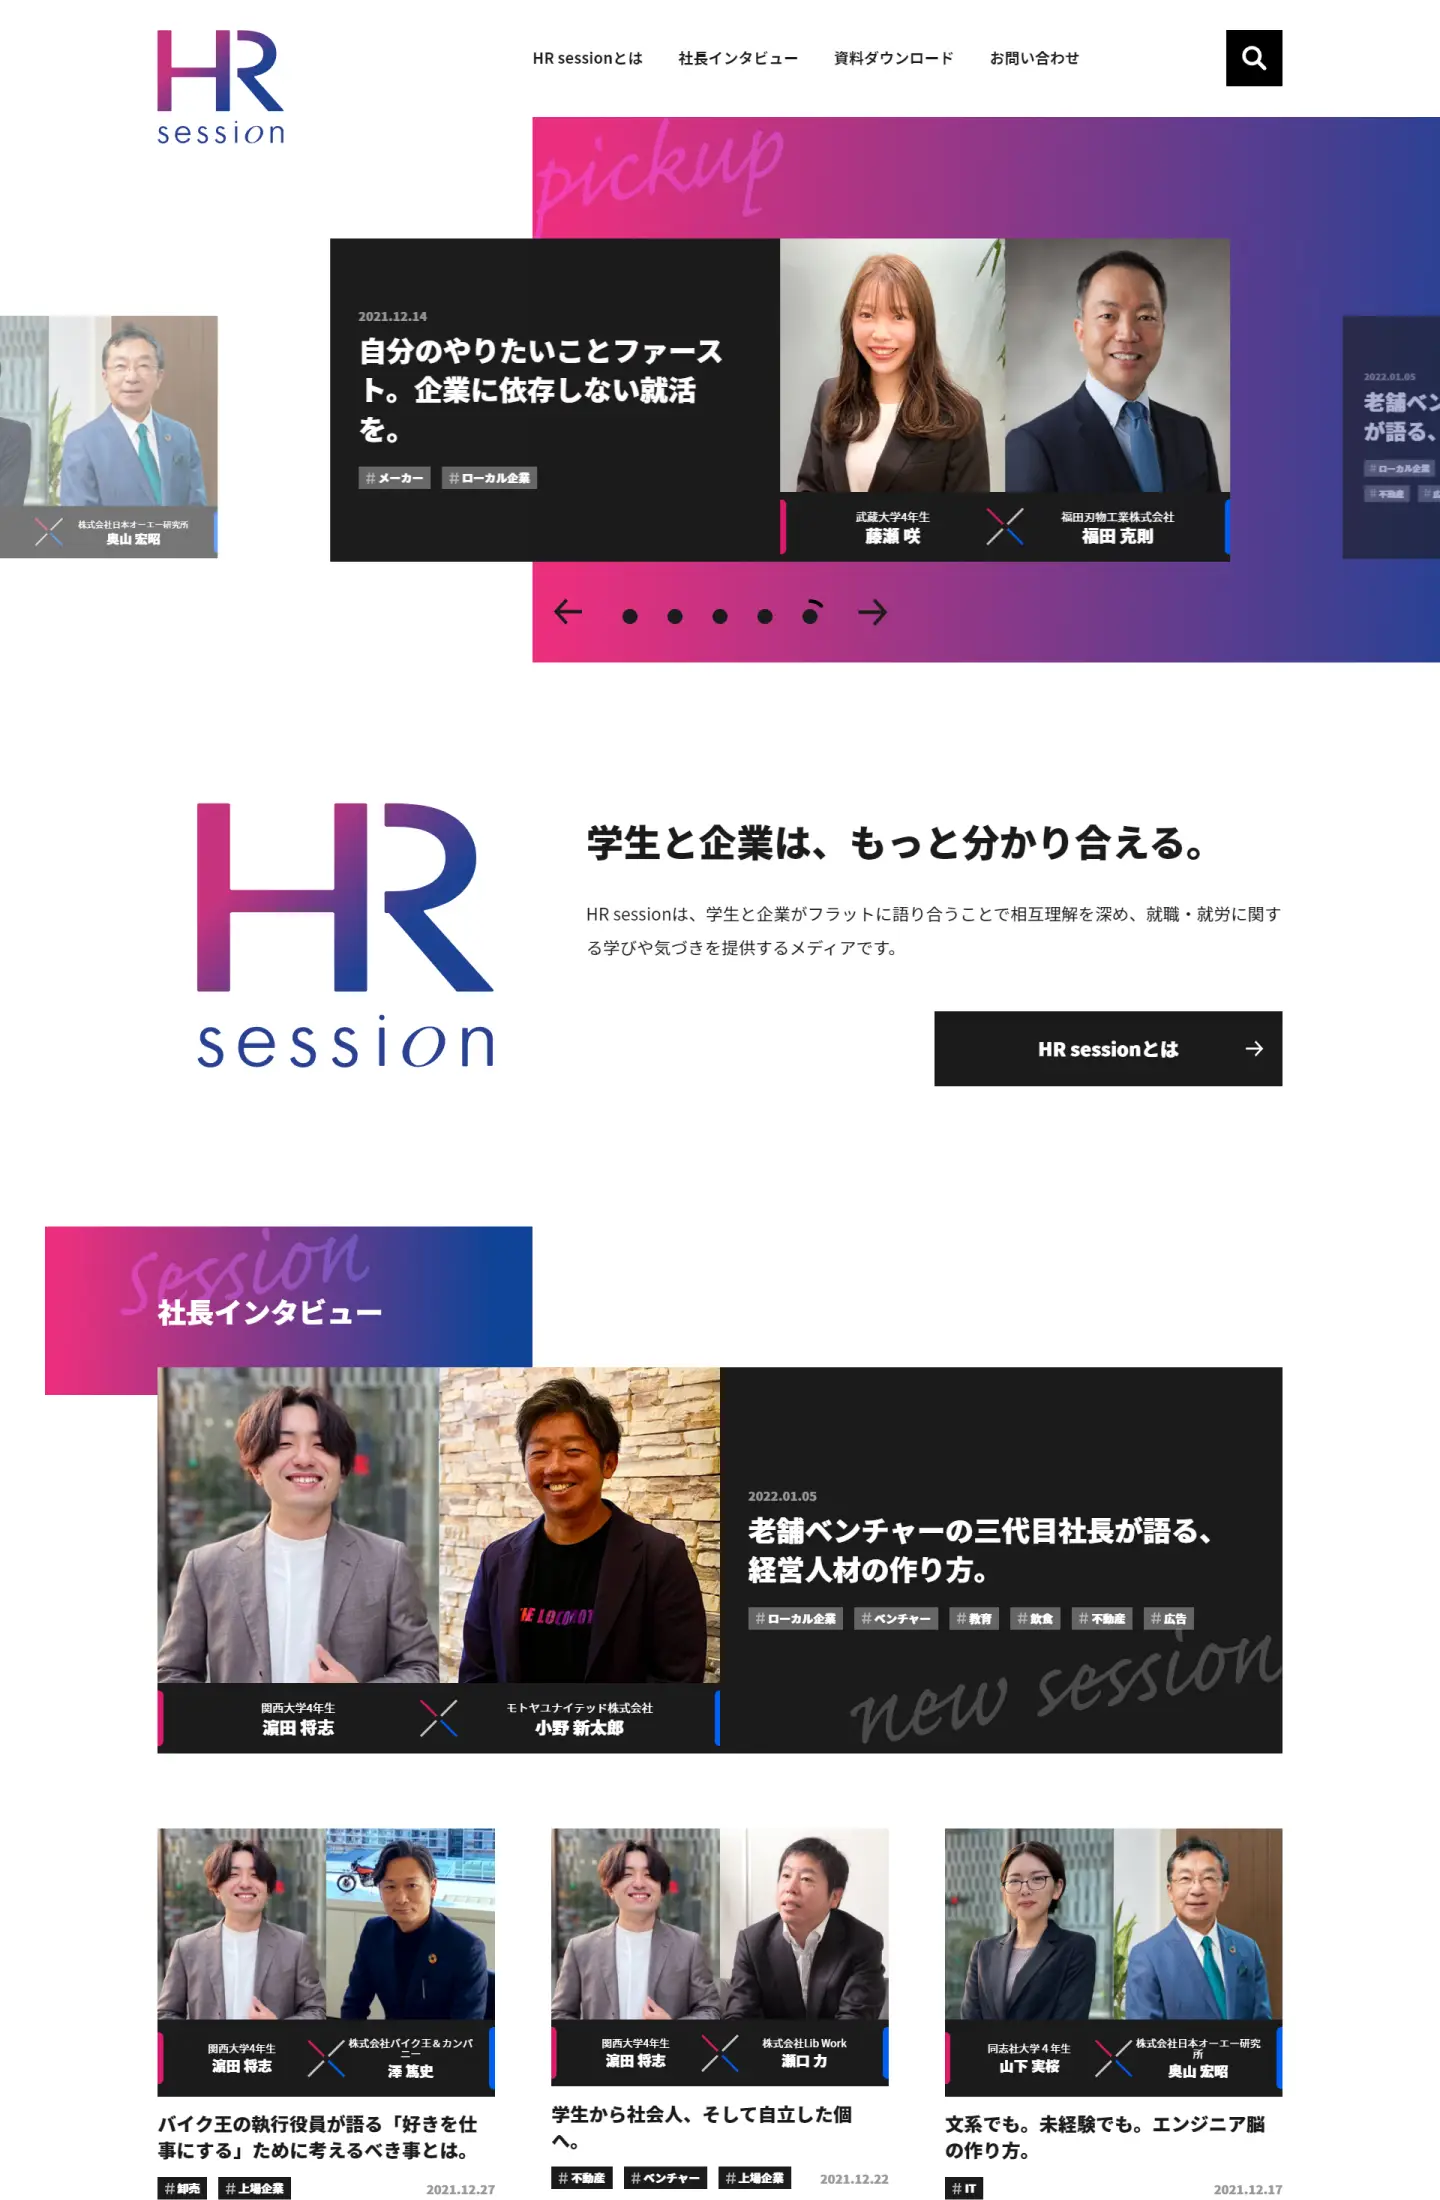 株式会社クイック - HR session